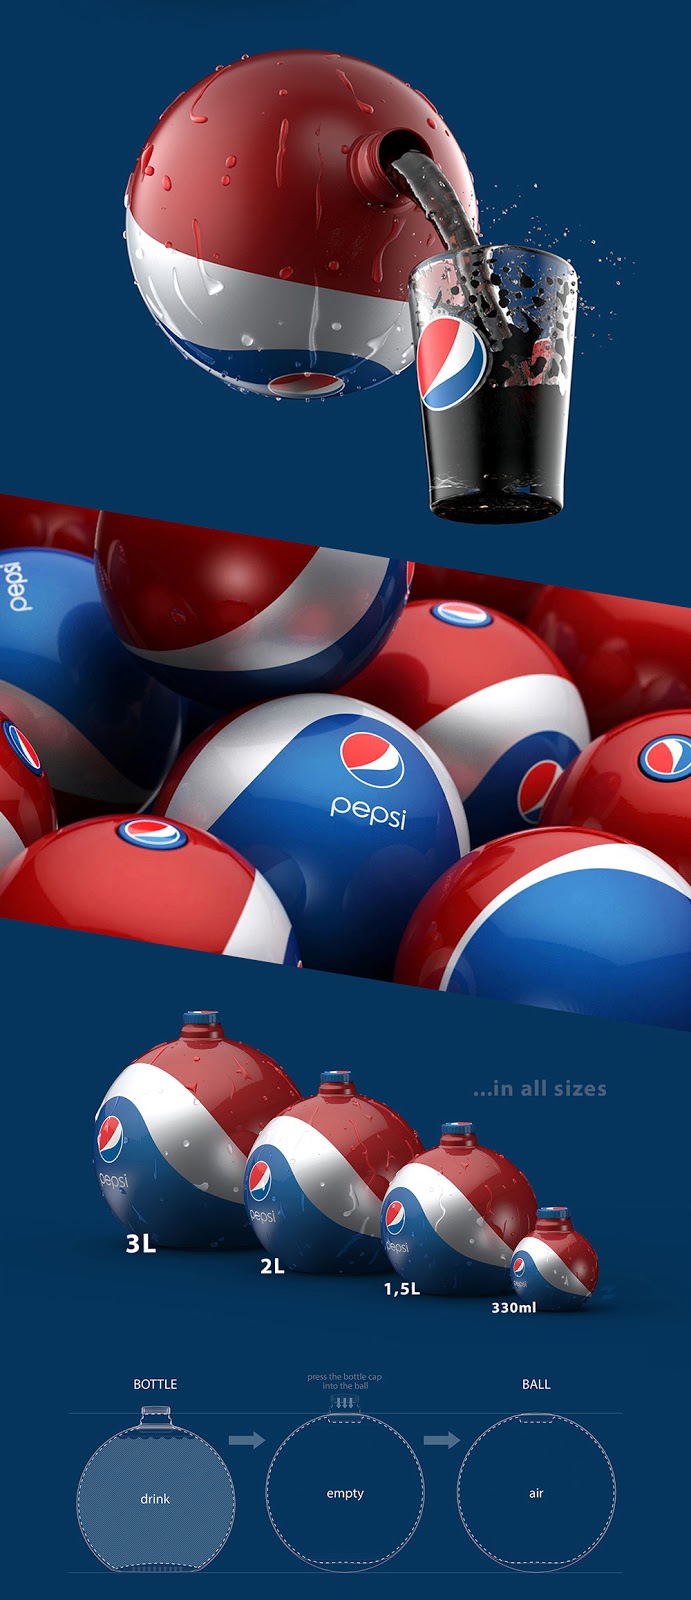 Pepsi-Rubber-Ball-Bottle-04